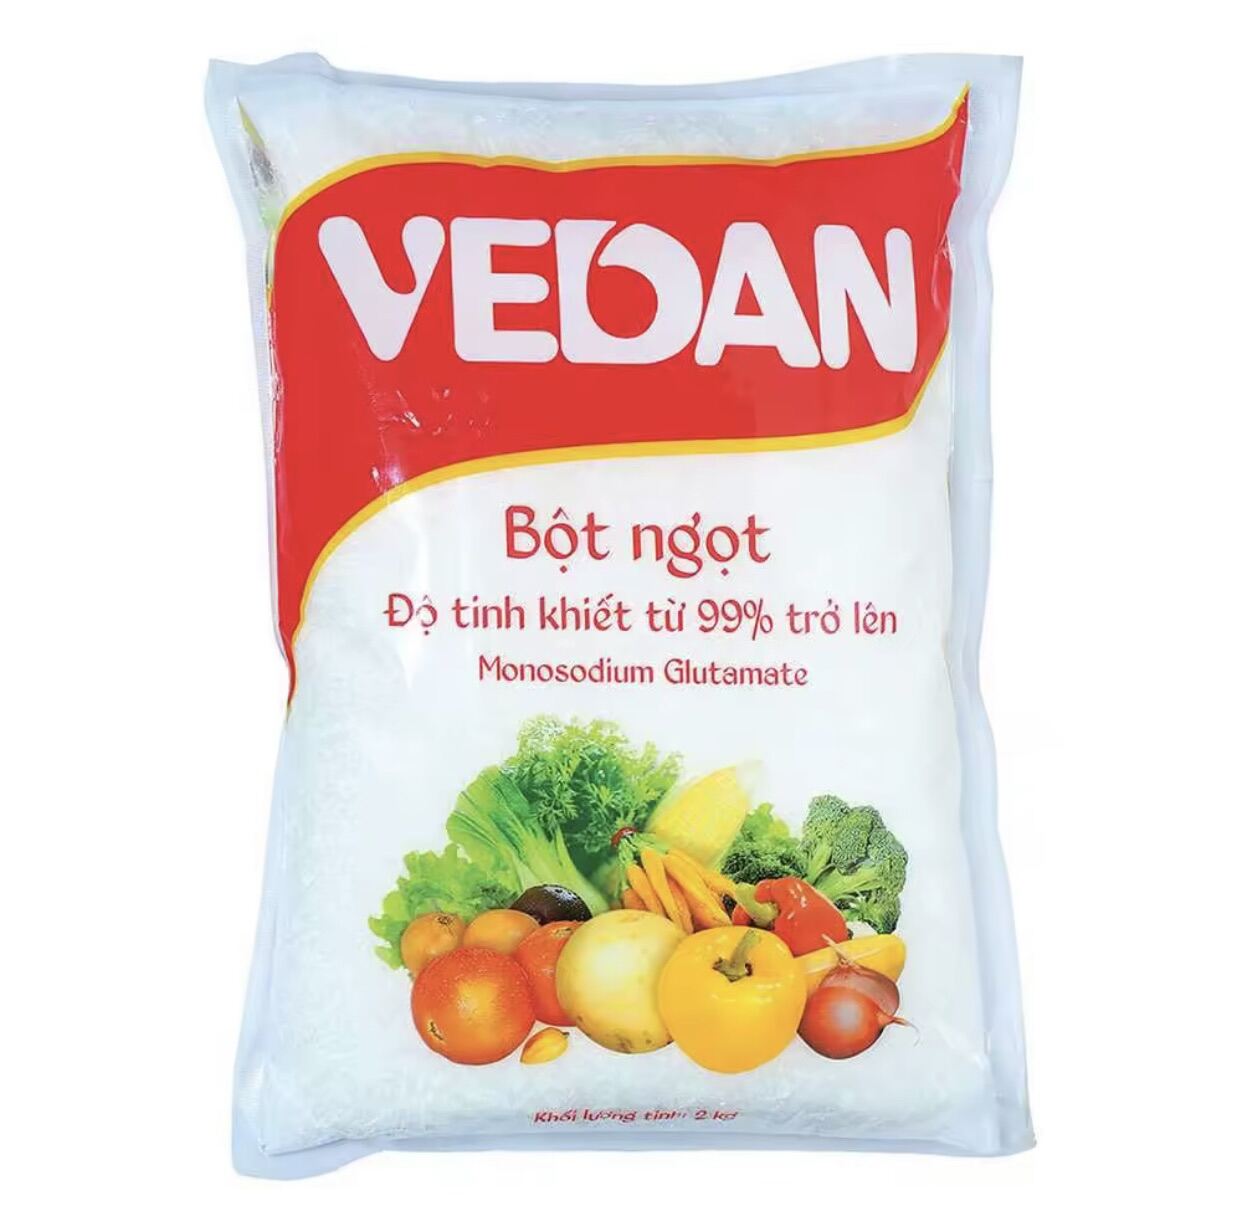 Bột ngọt Vedan hạt nhuyễn gói 1kg